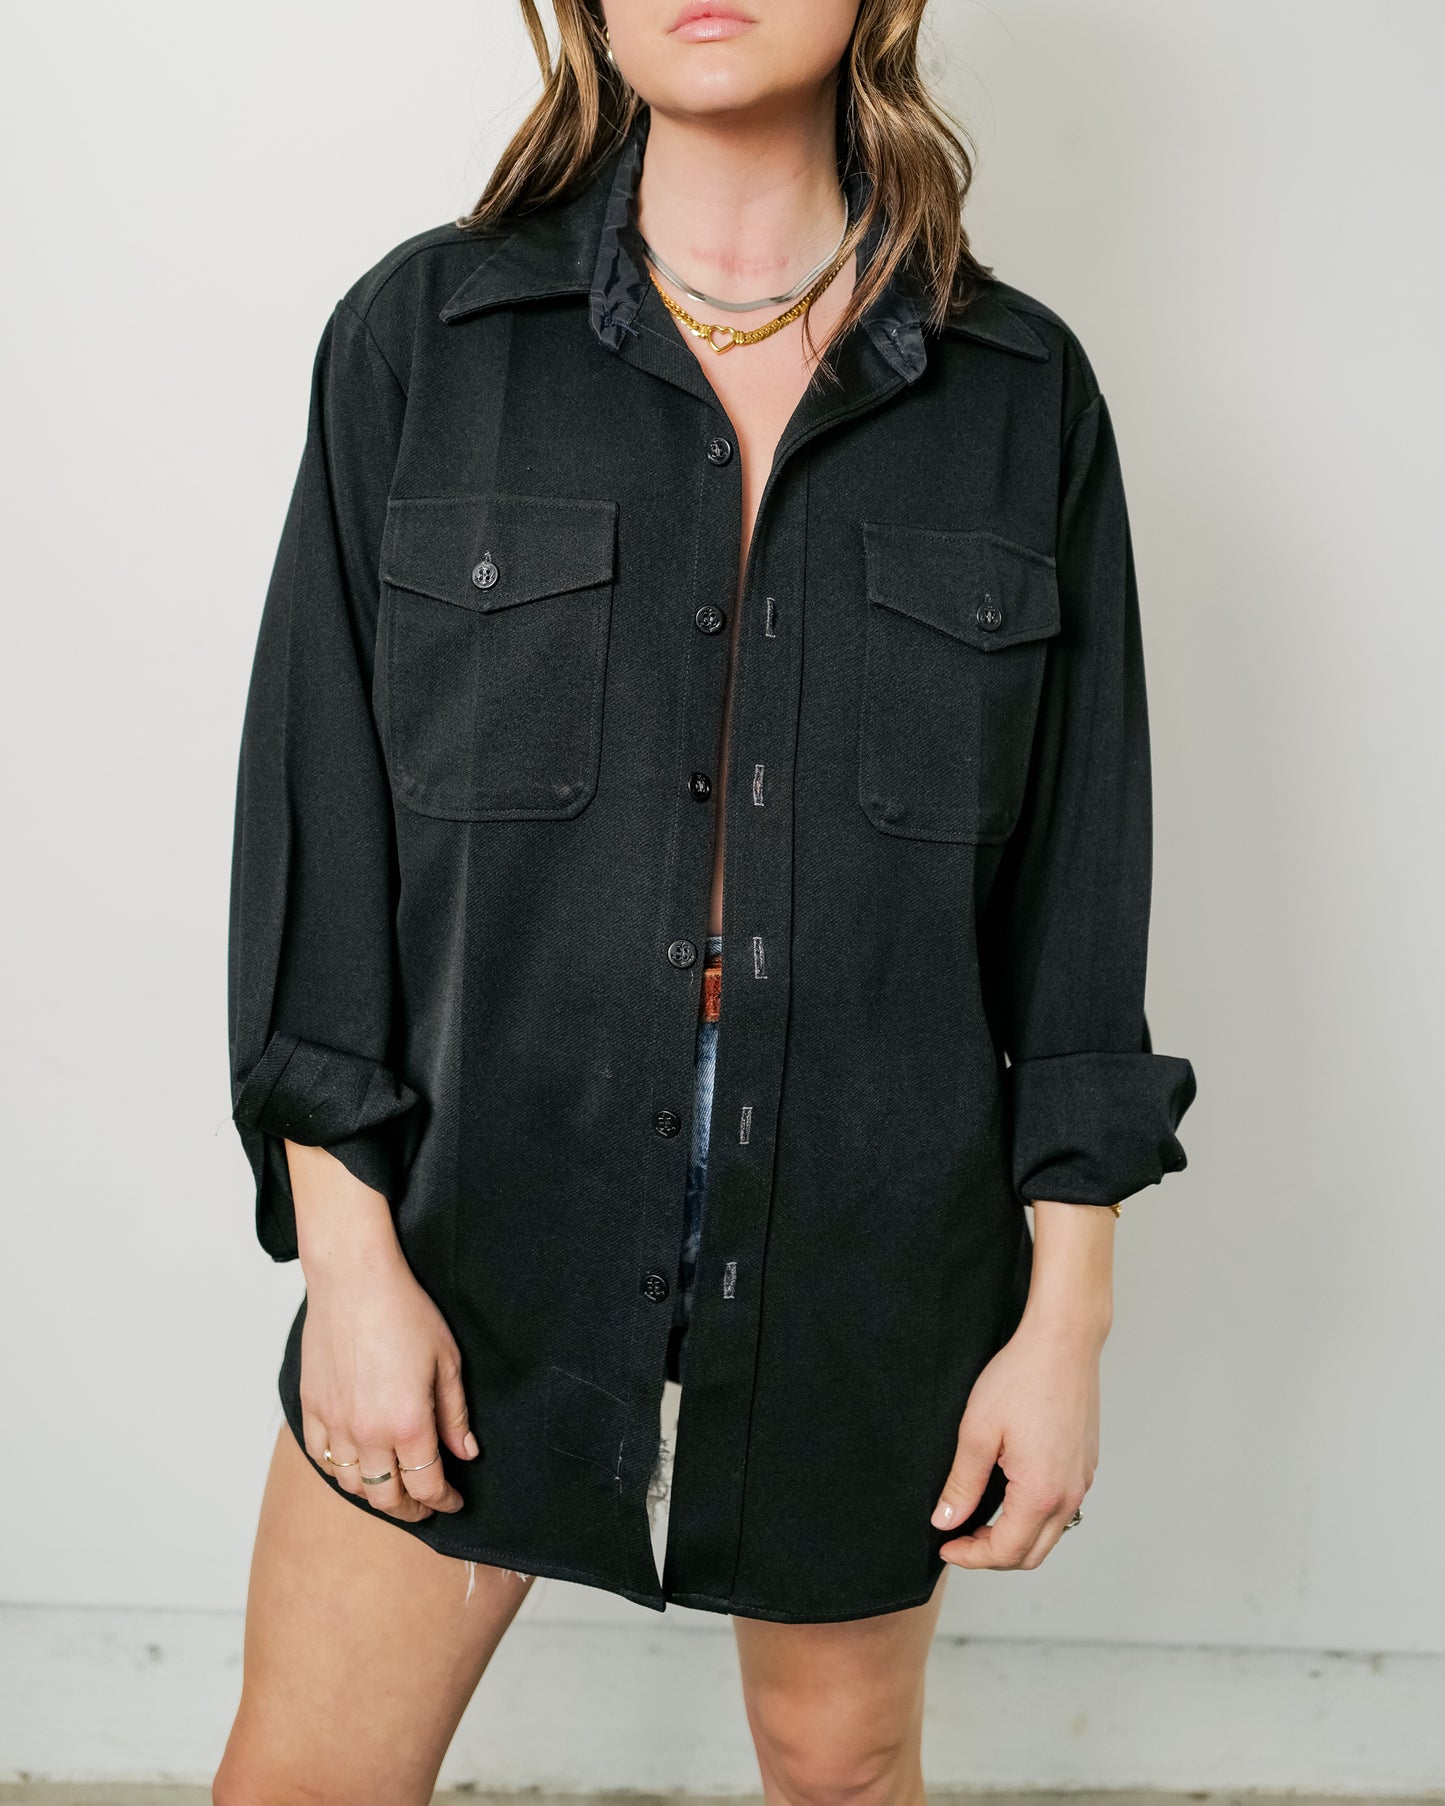 Vintage Black Long Sleeve Shirt - Size Large